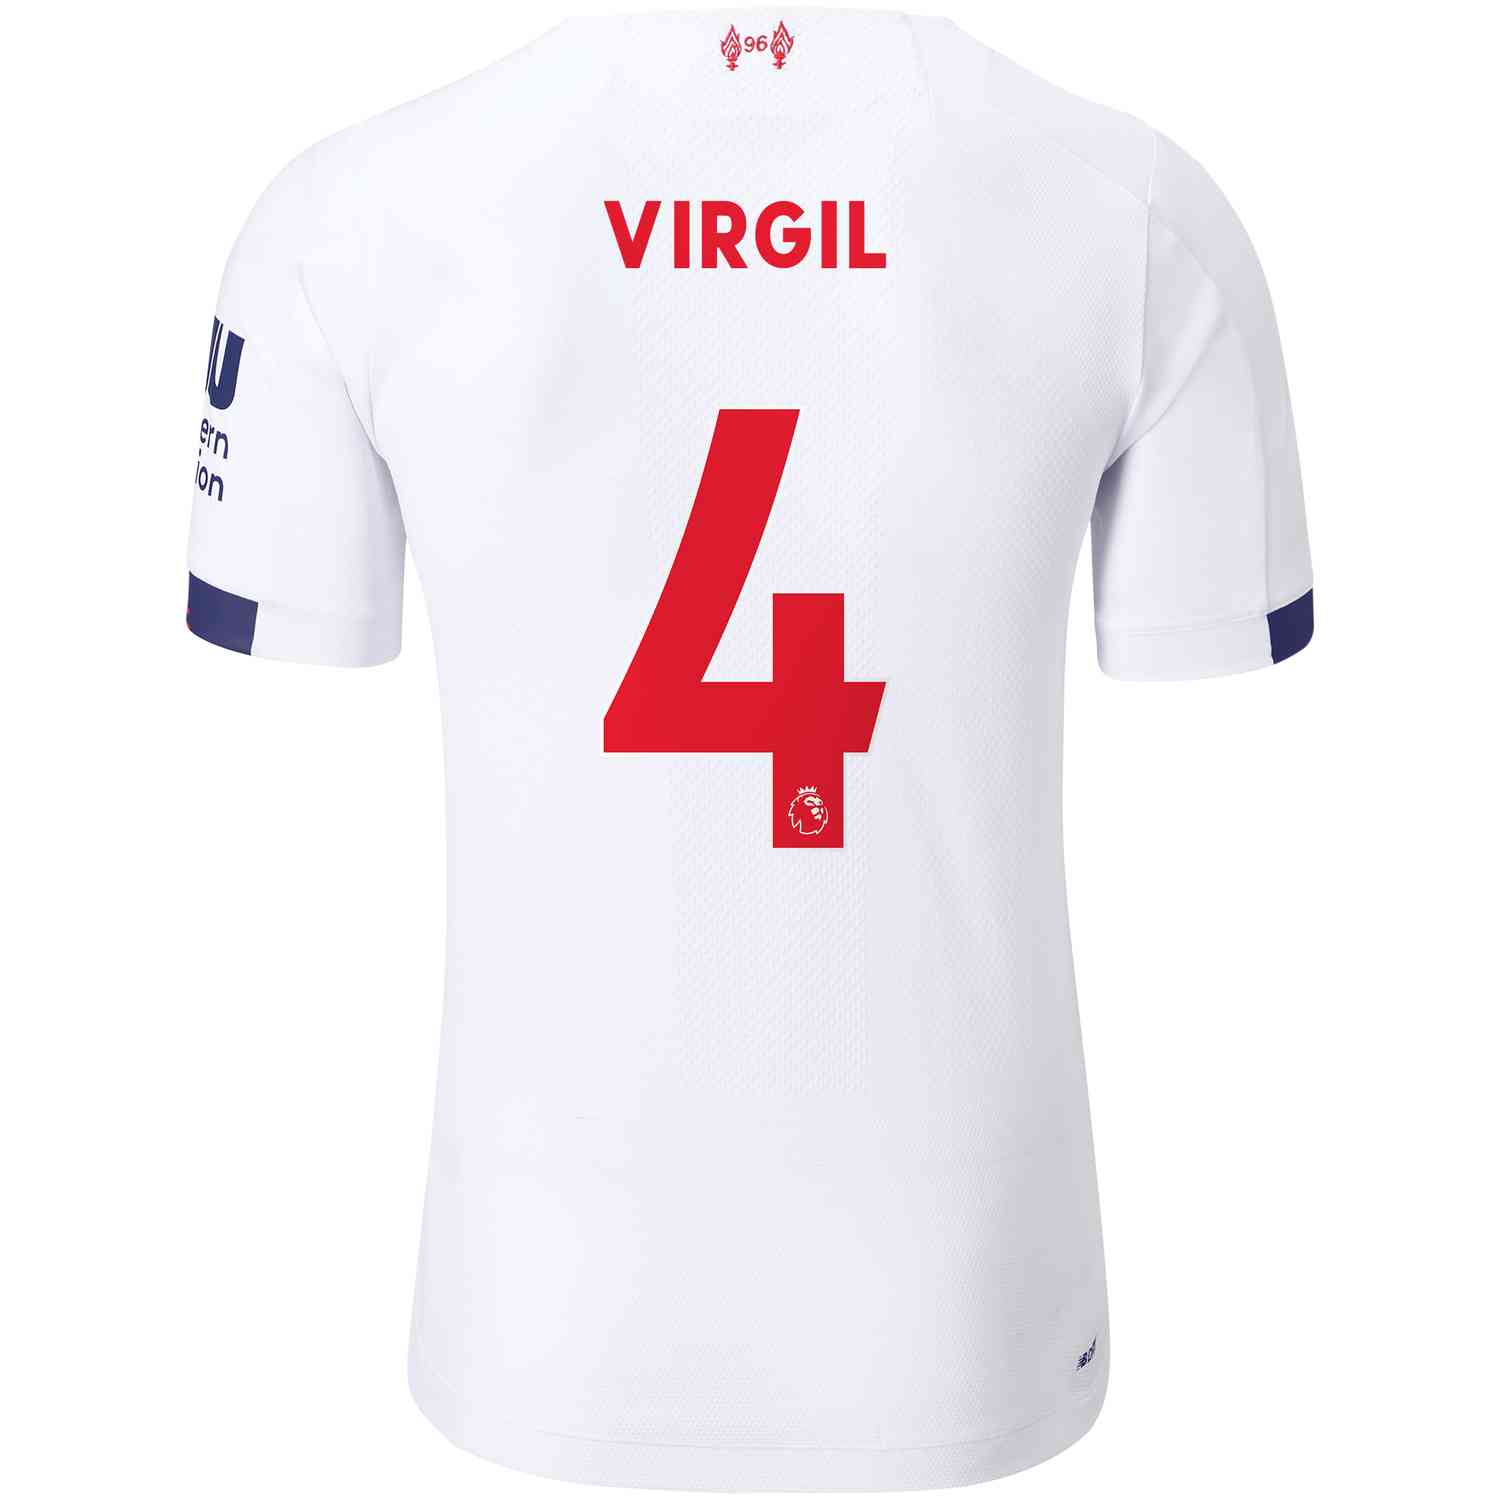 Moedig Pamflet Doodt 2019/20 Virgil van Dijk Liverpool Away Elite Jersey - Soccer Master